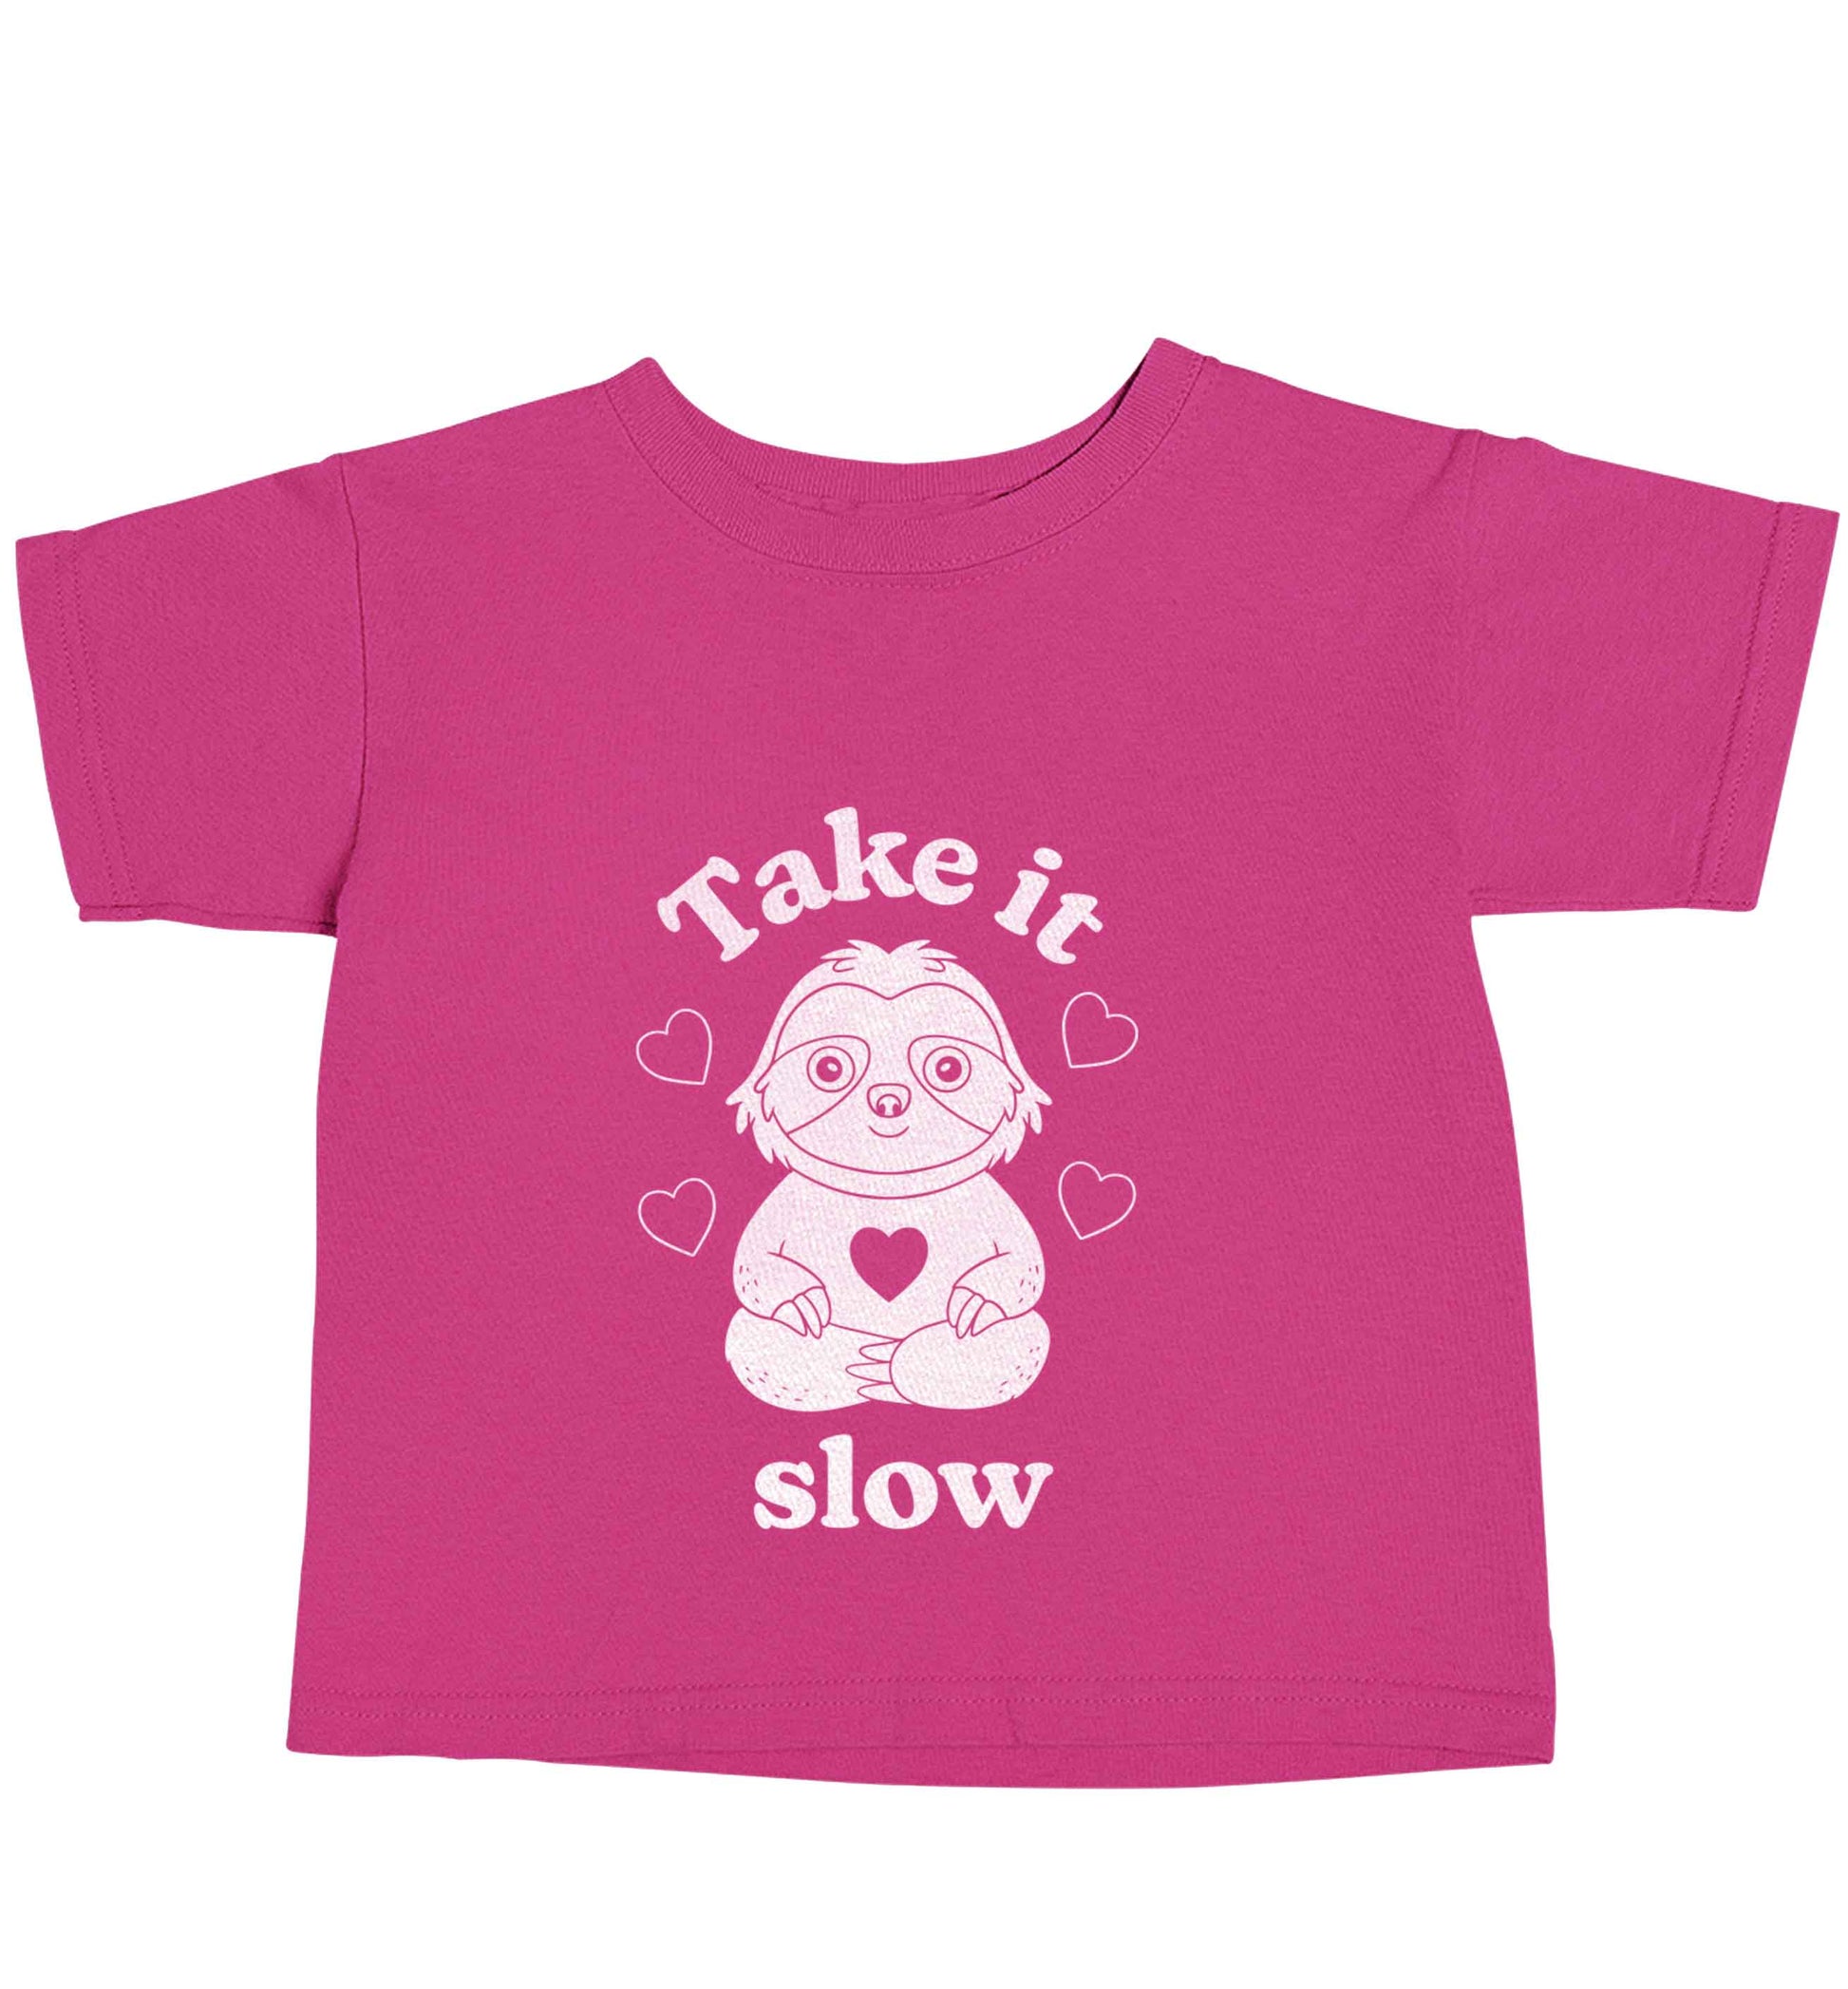 Take it slow pink baby toddler Tshirt 2 Years